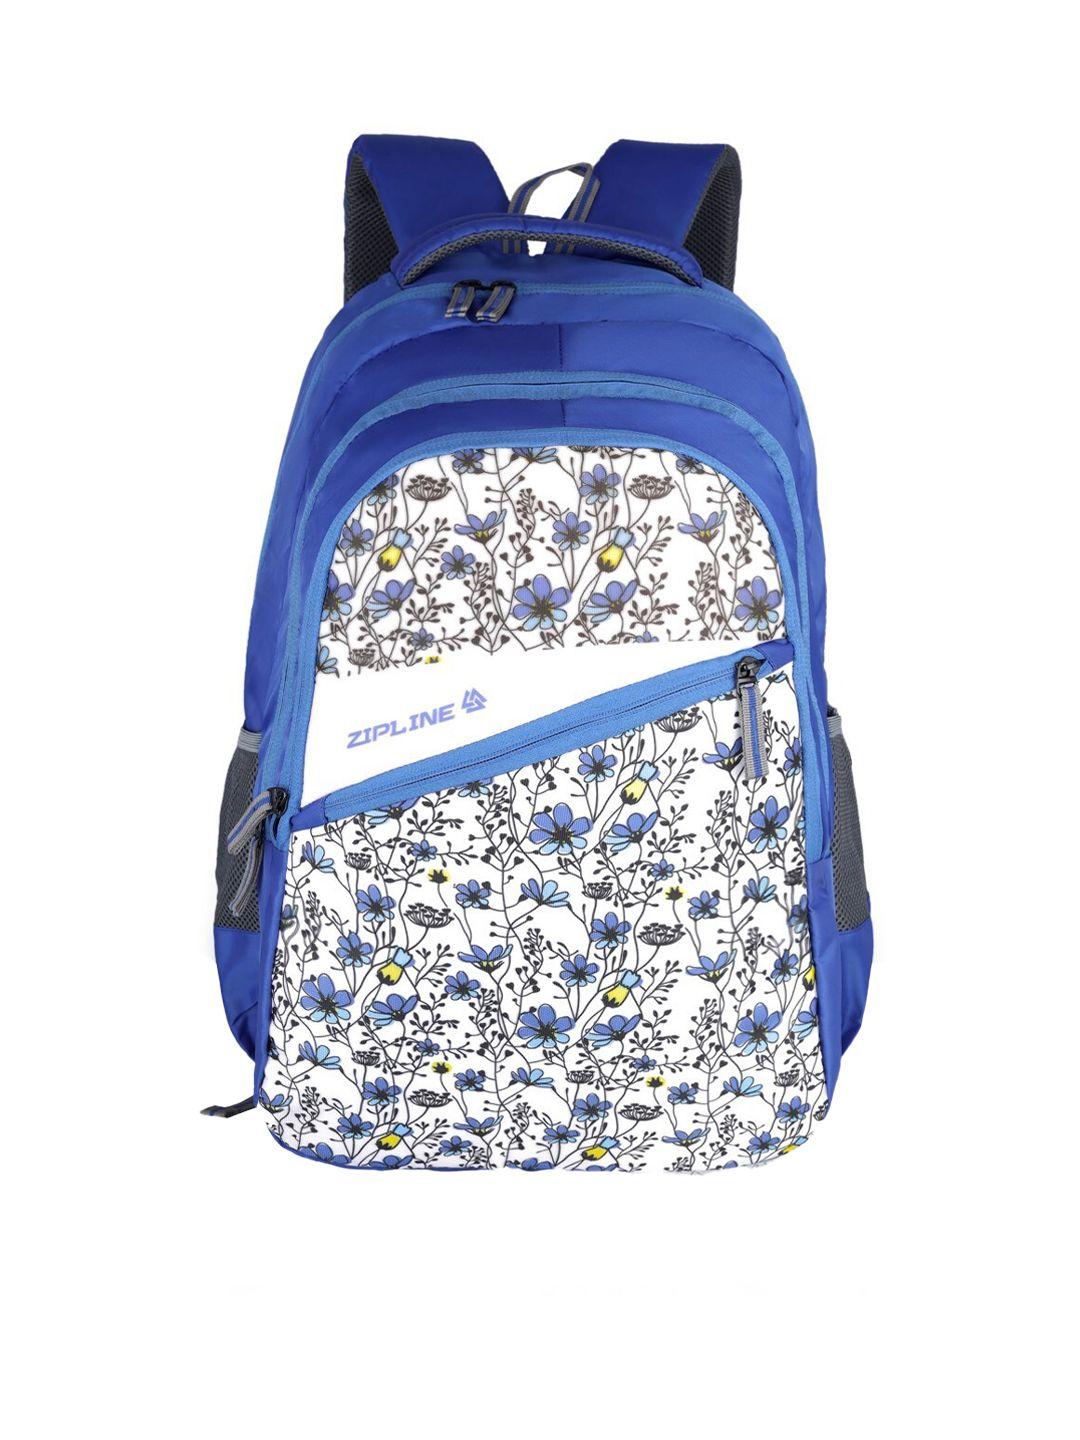 zipline unisex floral printed padded backpack